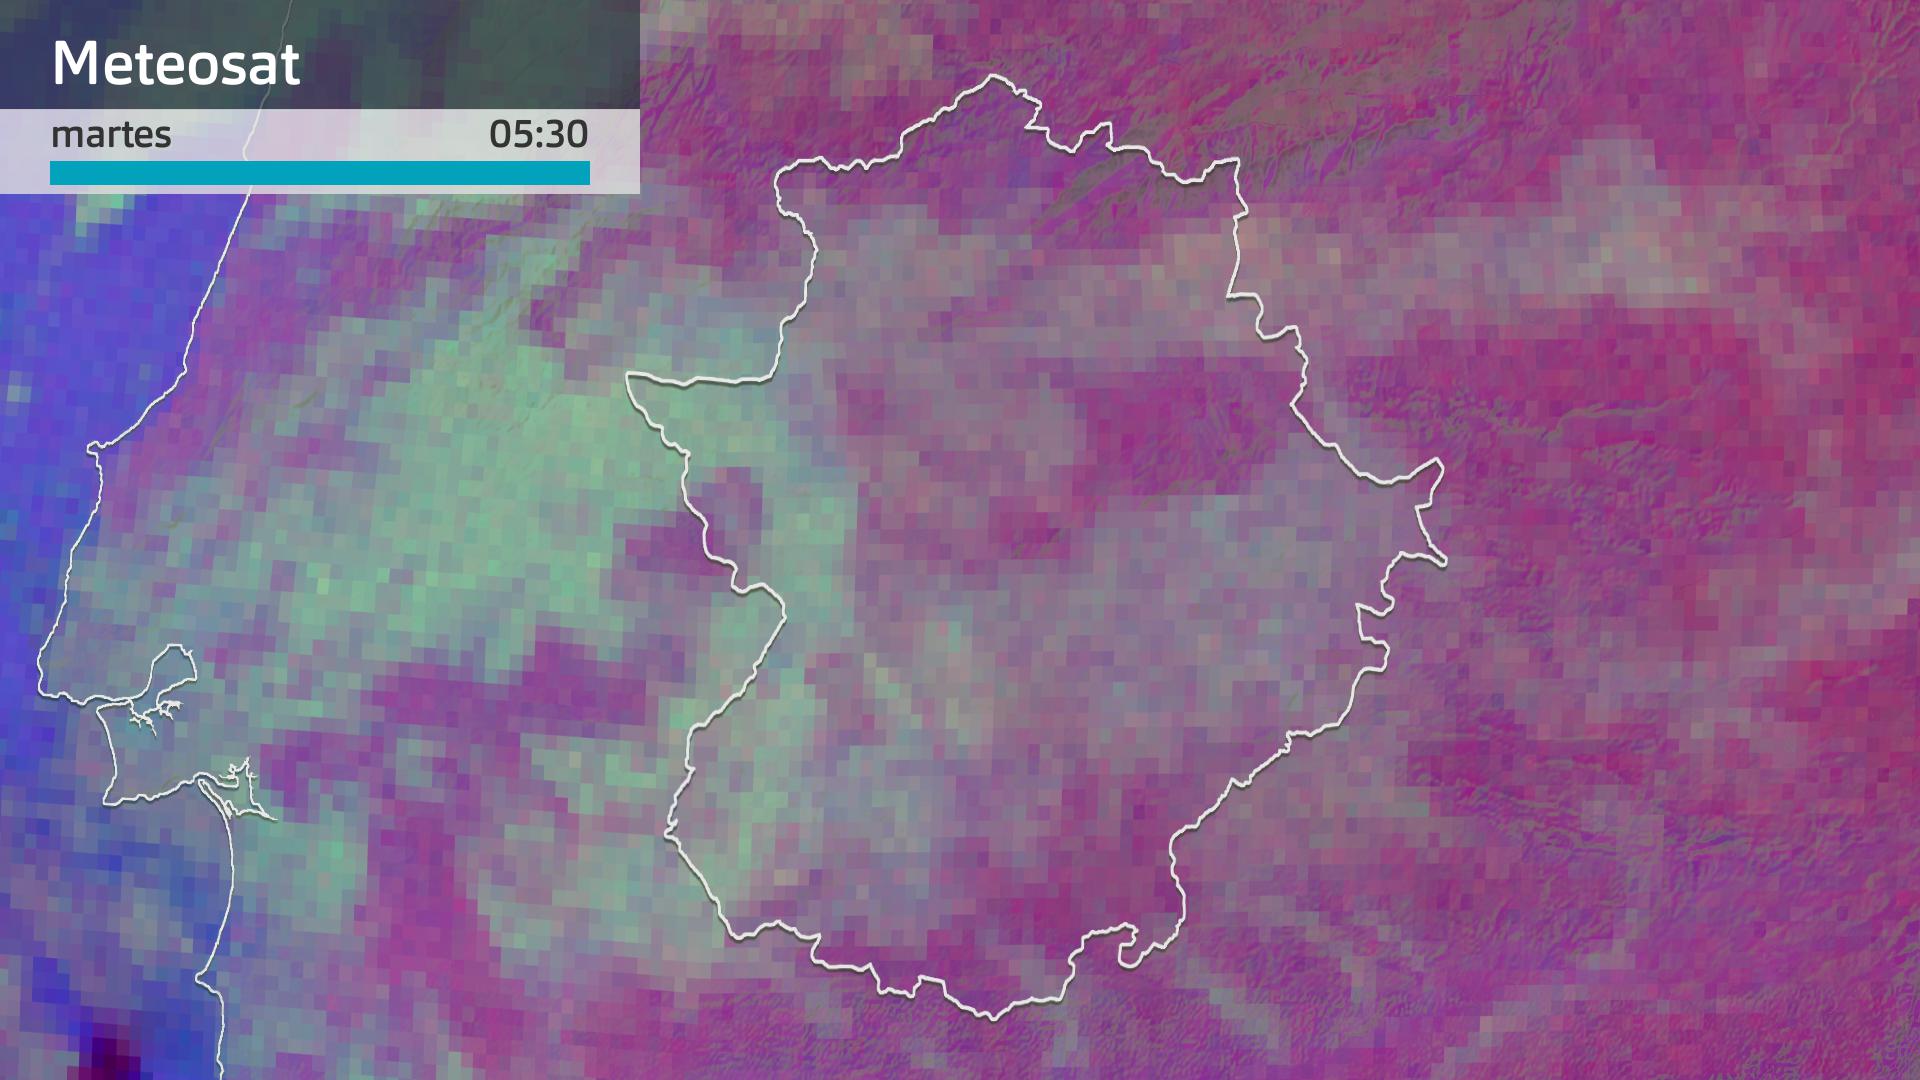 Imagen del Meteosat martes 26 de diciembre 5:30 h.